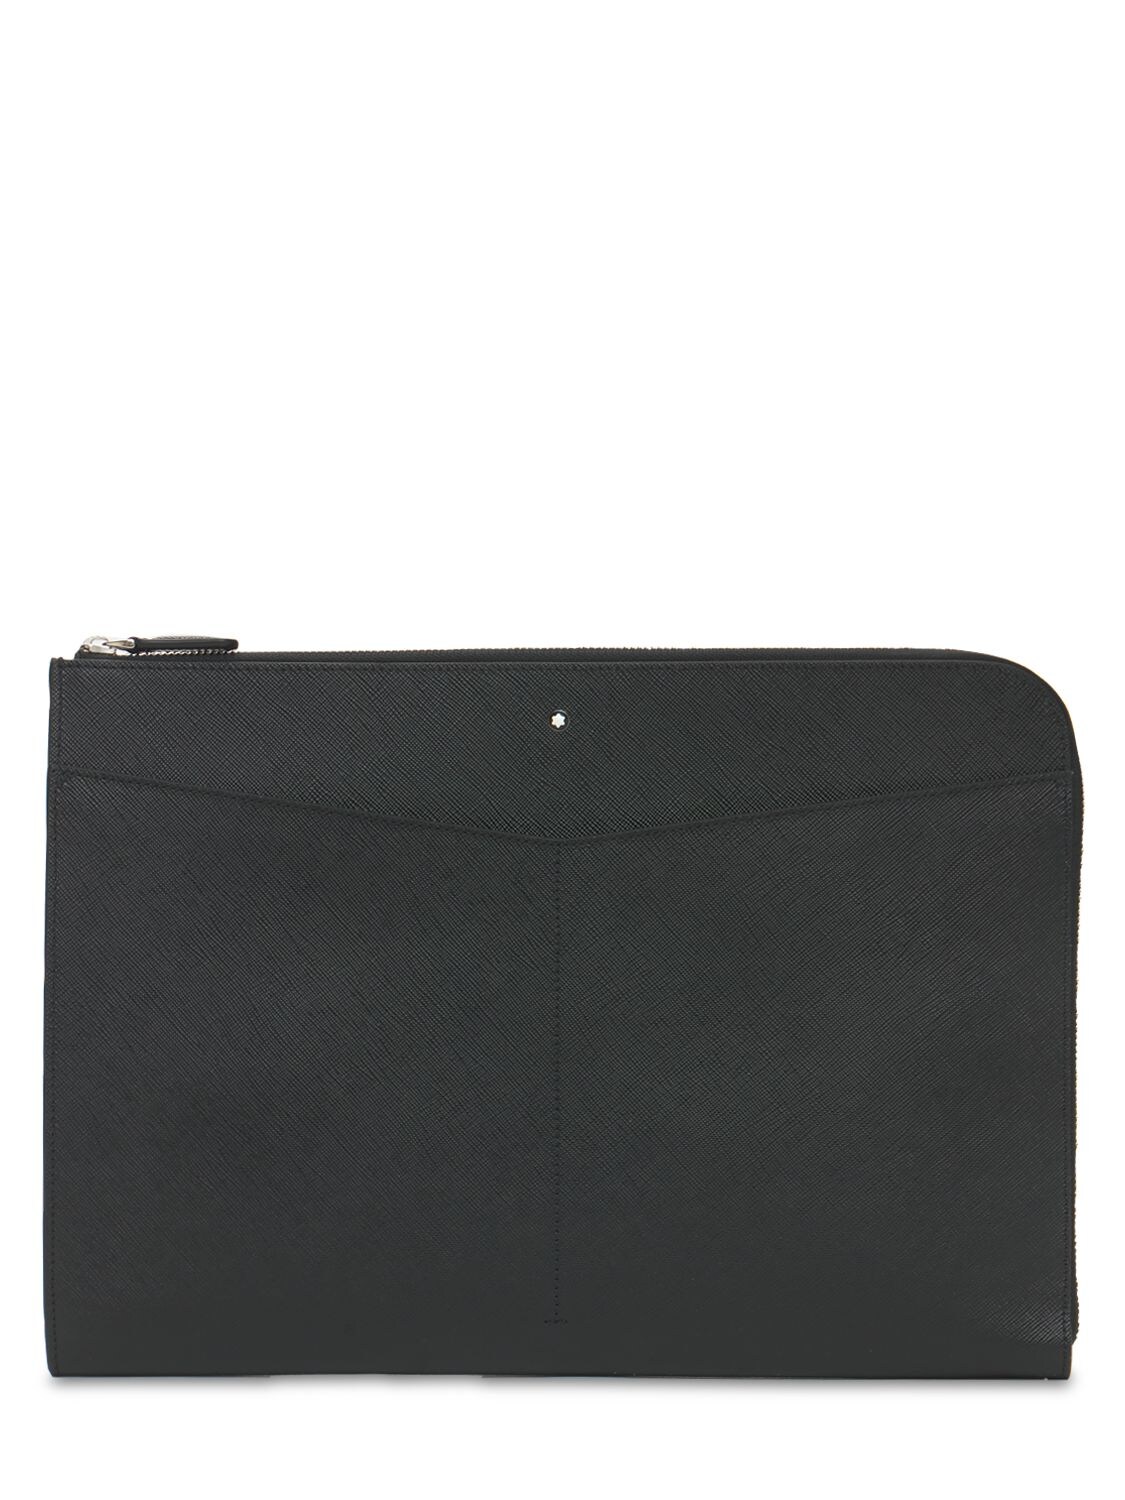 Montblanc Logo Sartorial Leather Zip Portfolio In Black | ModeSens